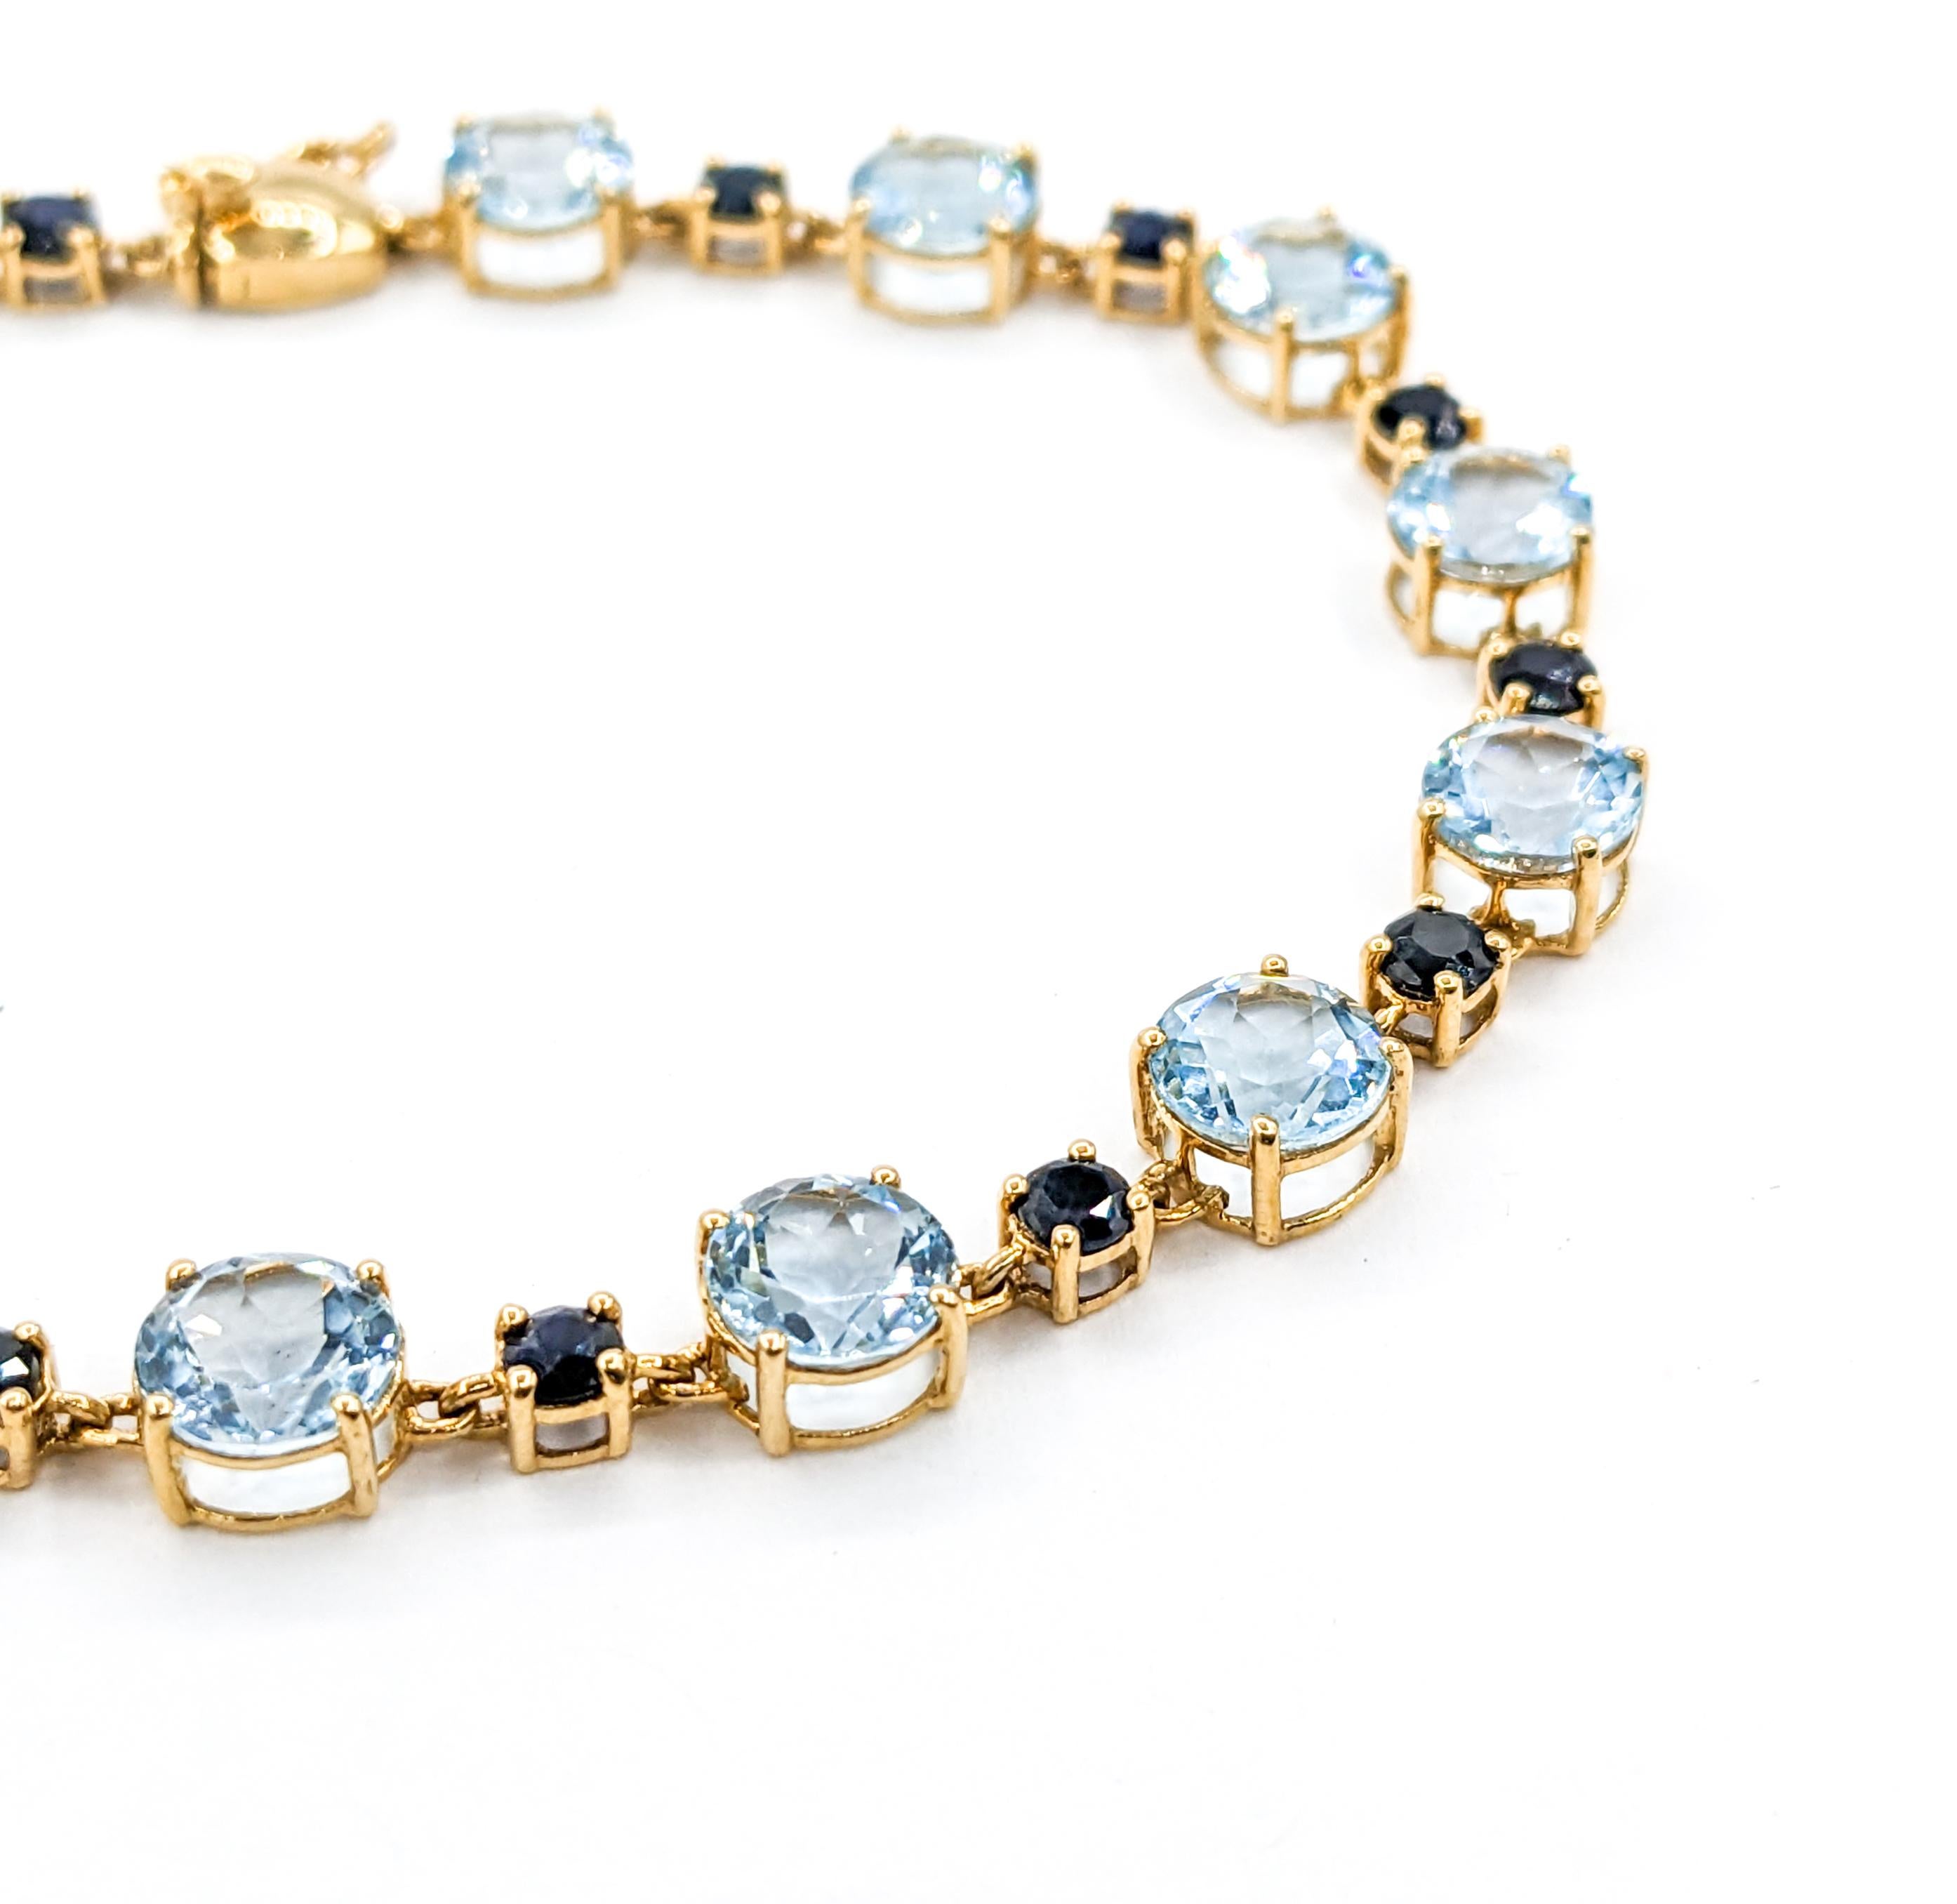 Round Cut Topaz & Midnight Sapphire Gemstone bracelet Yellow Gold 